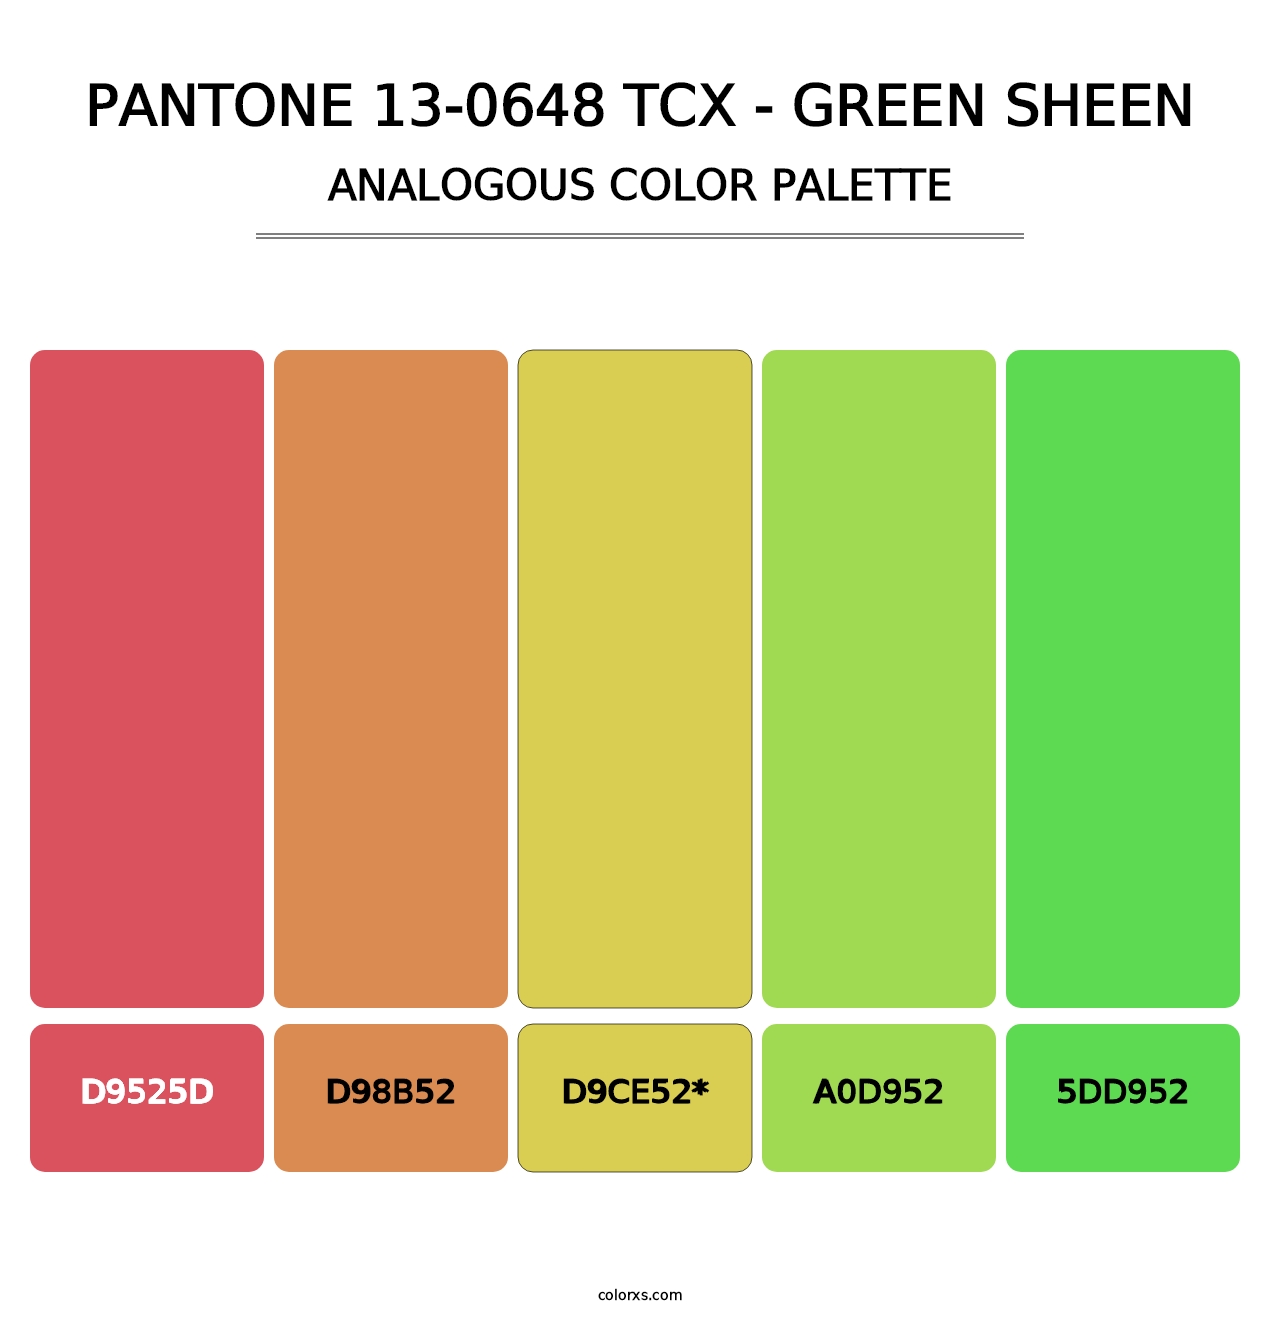 PANTONE 13-0648 TCX - Green Sheen - Analogous Color Palette